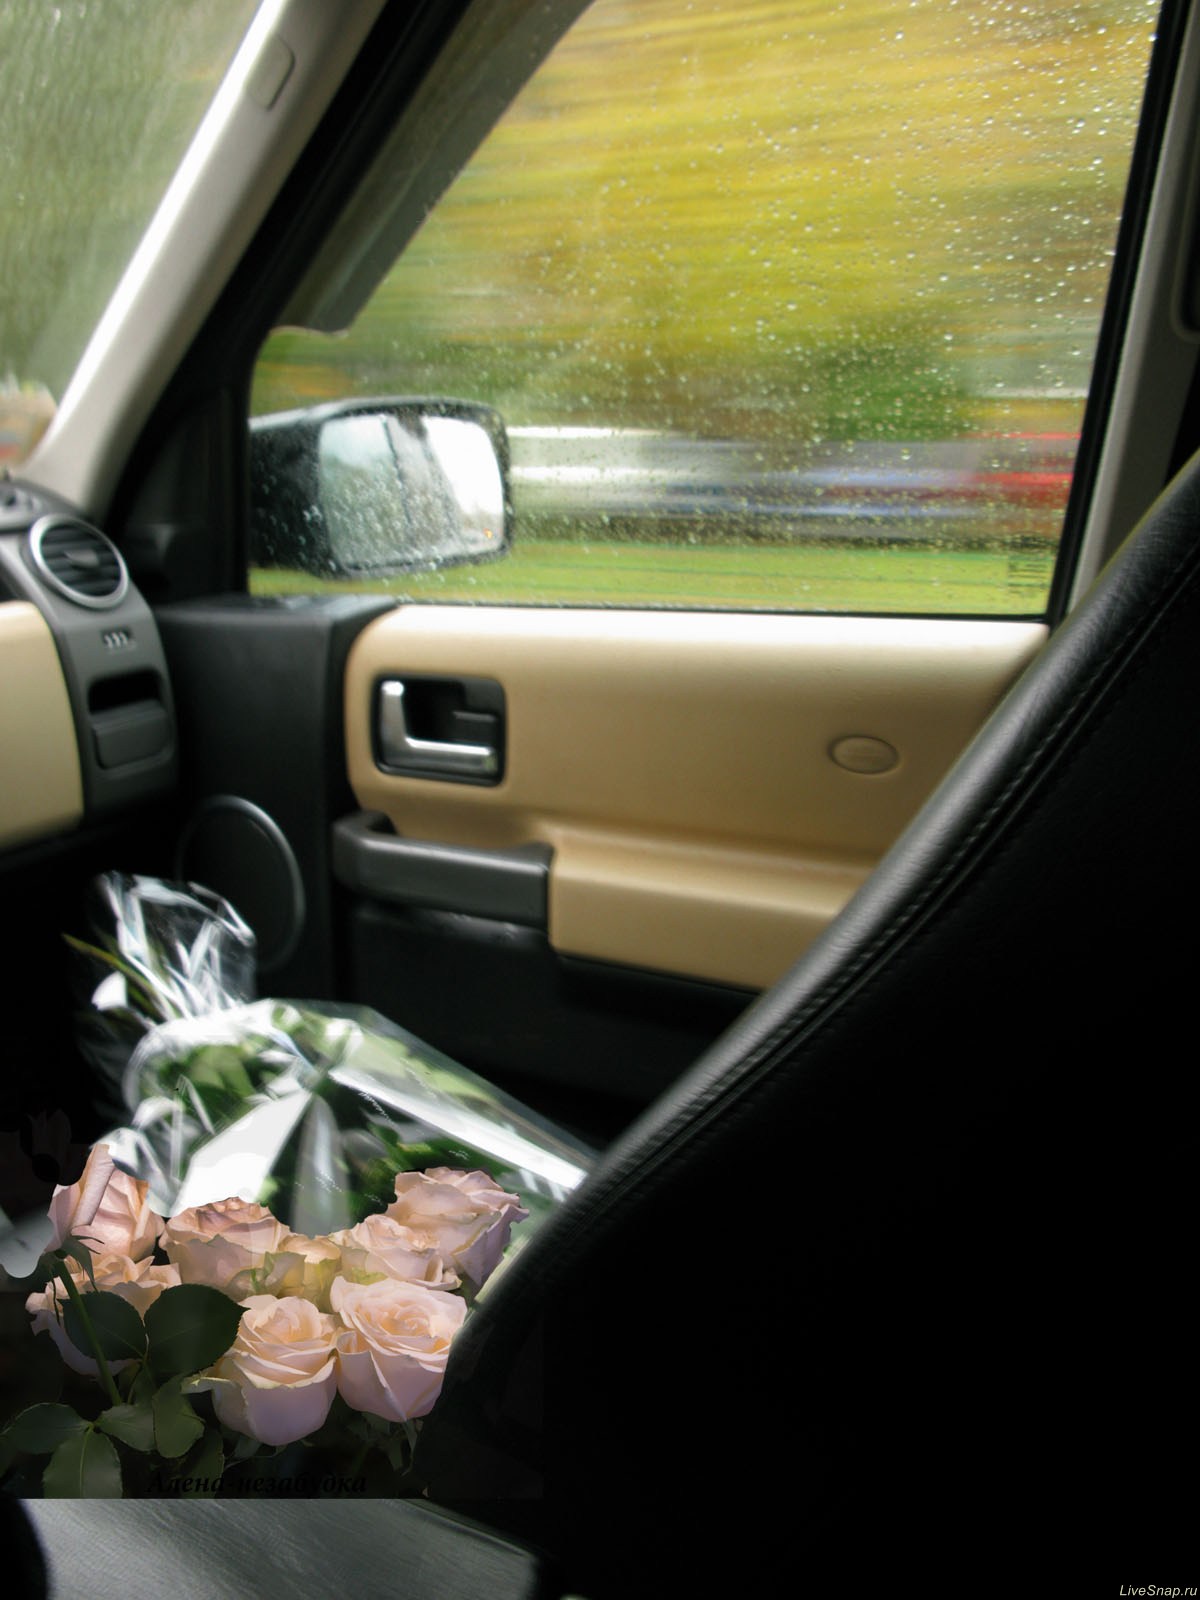  цветов в машине
